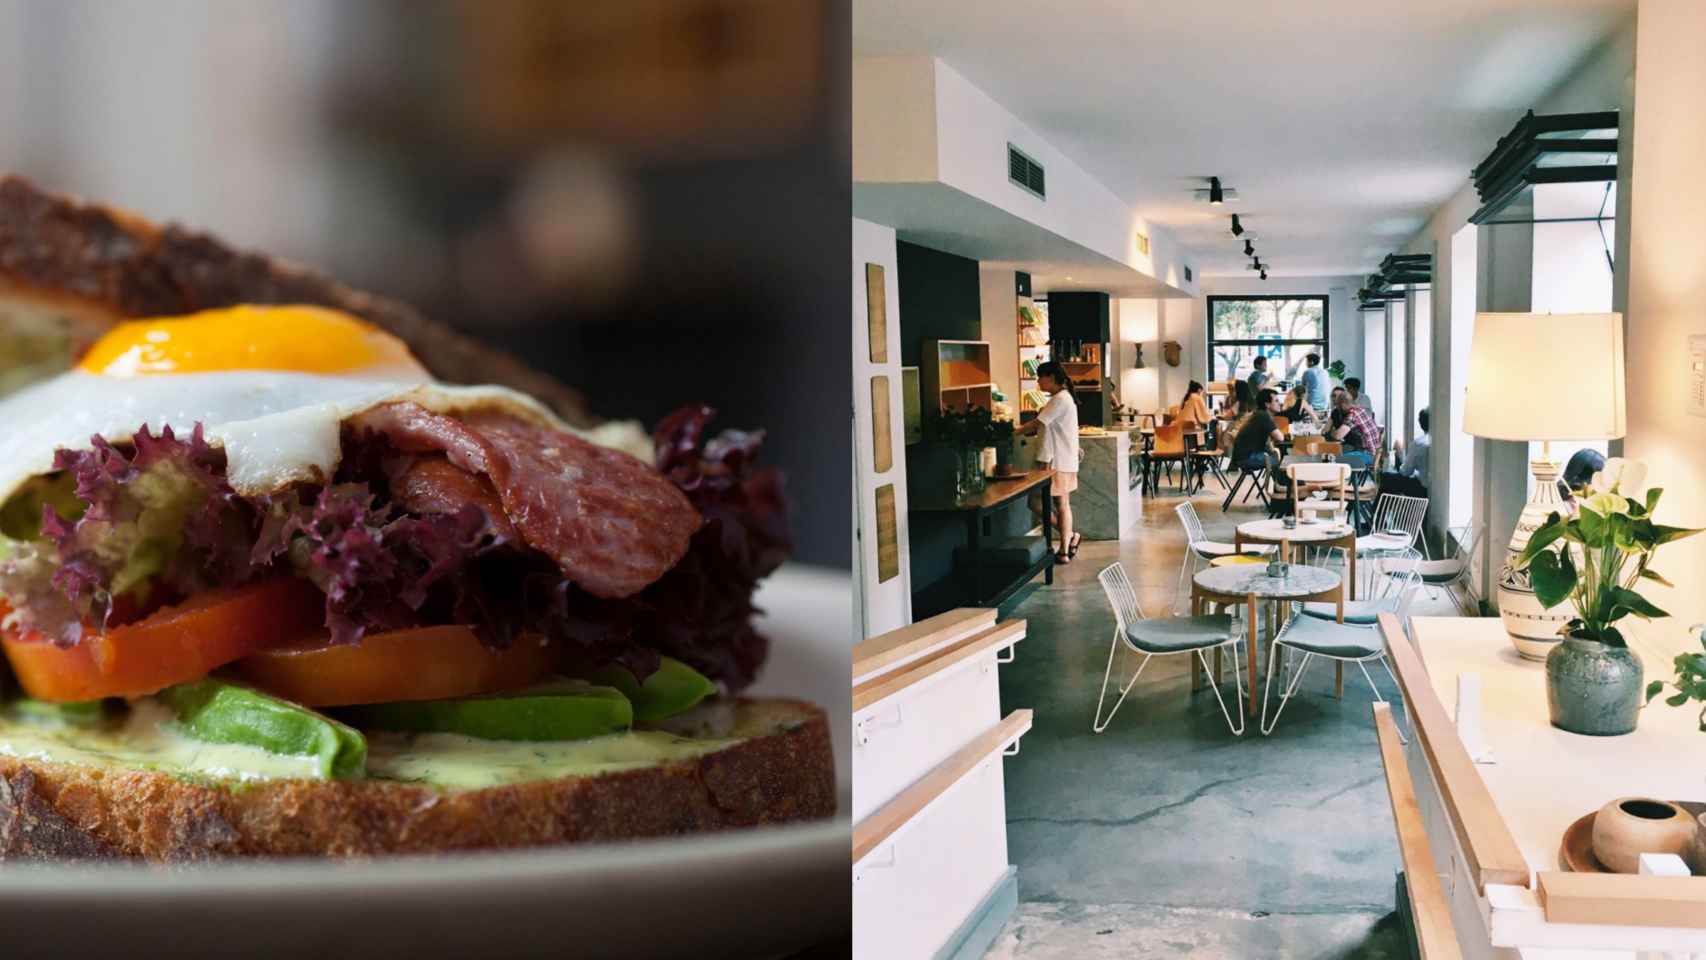 Un espacio de estilo nórdico ideal para disfrutar del brunch del domingo. | Foto cortesía de Federal Café